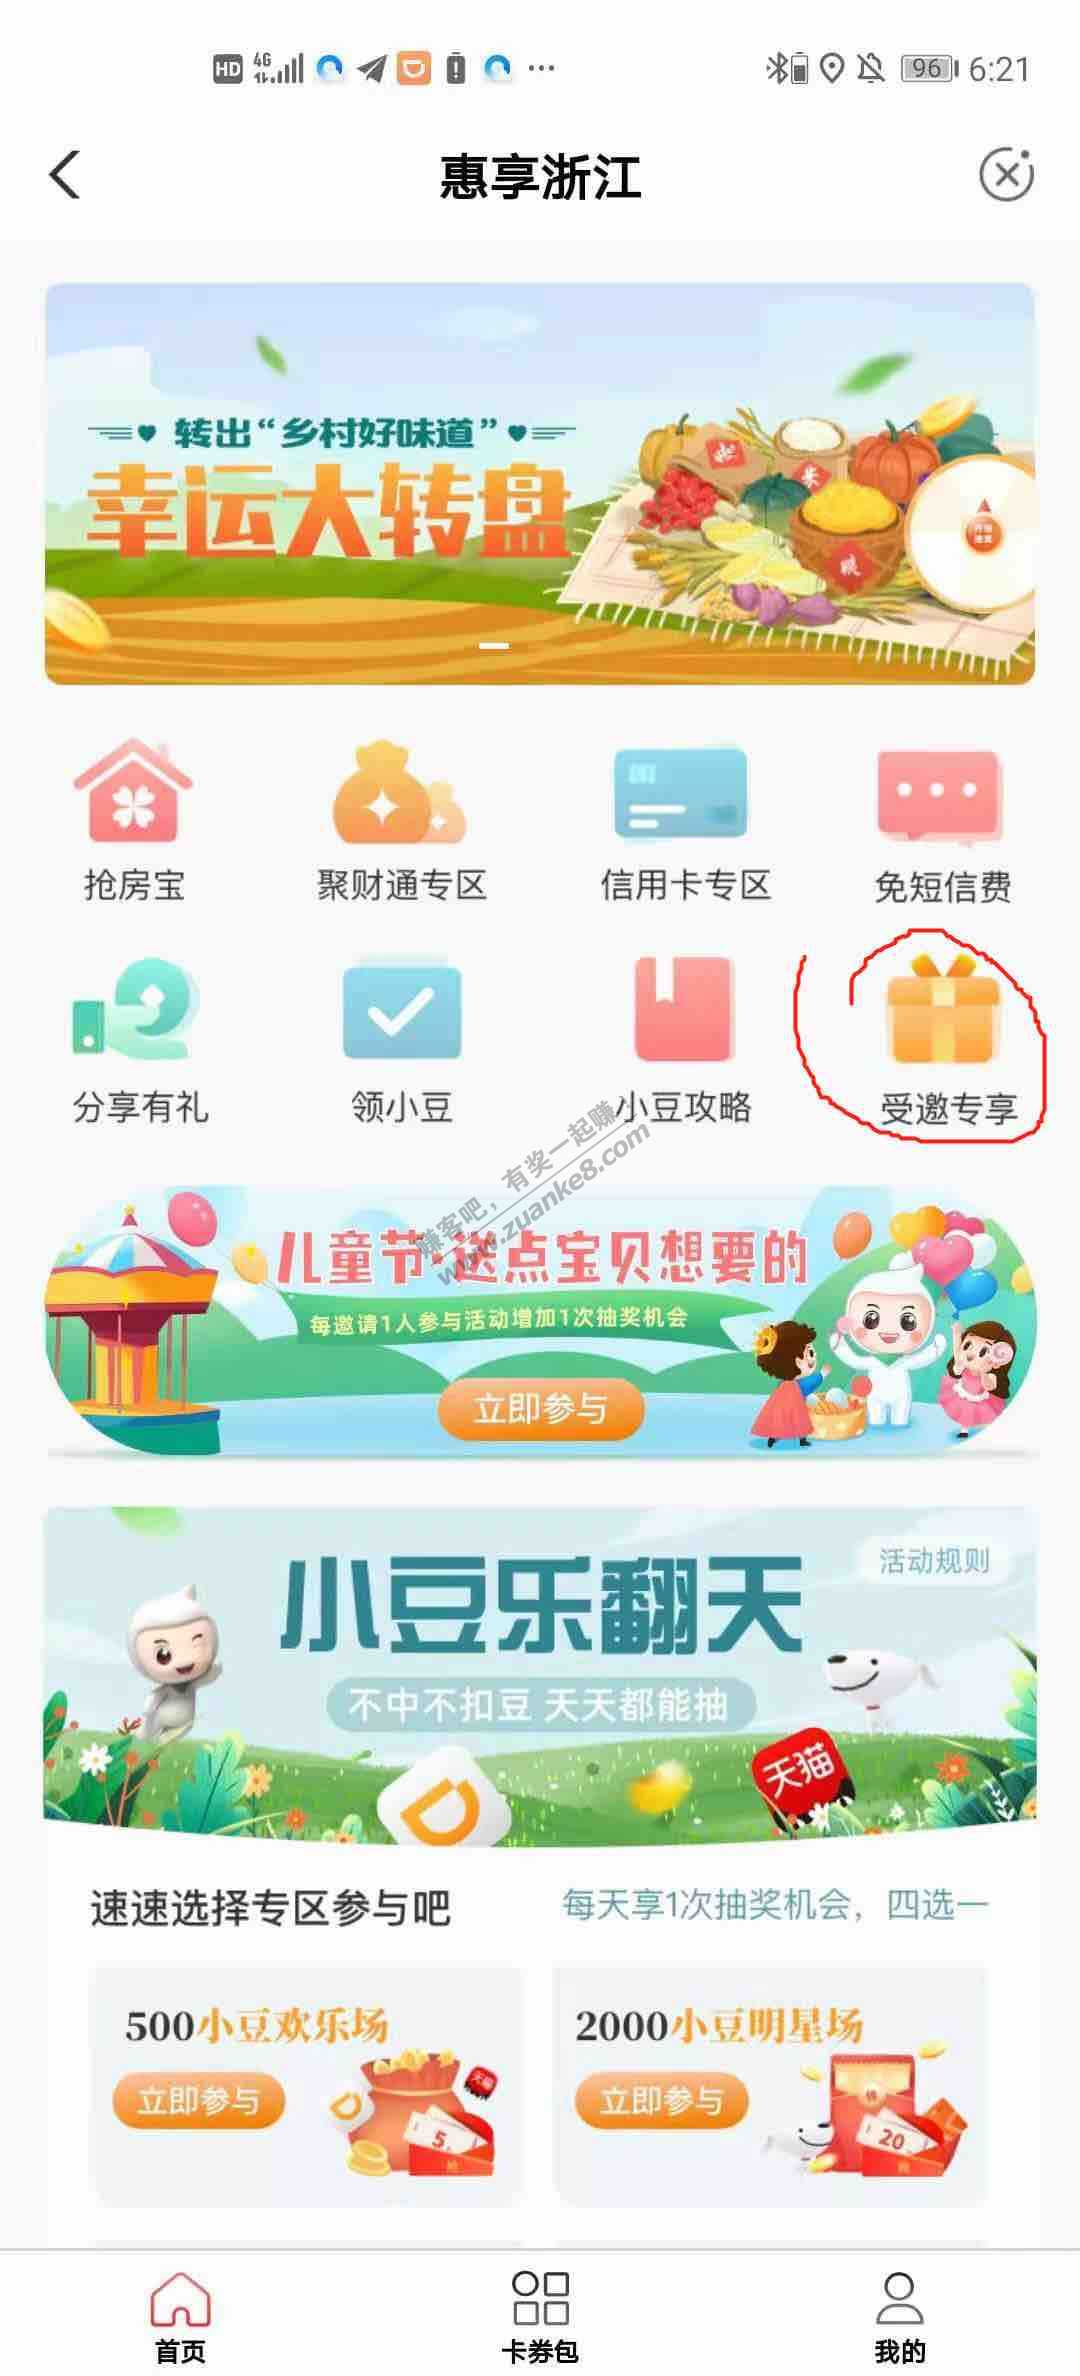 浙江农行10话费-惠小助(52huixz.com)